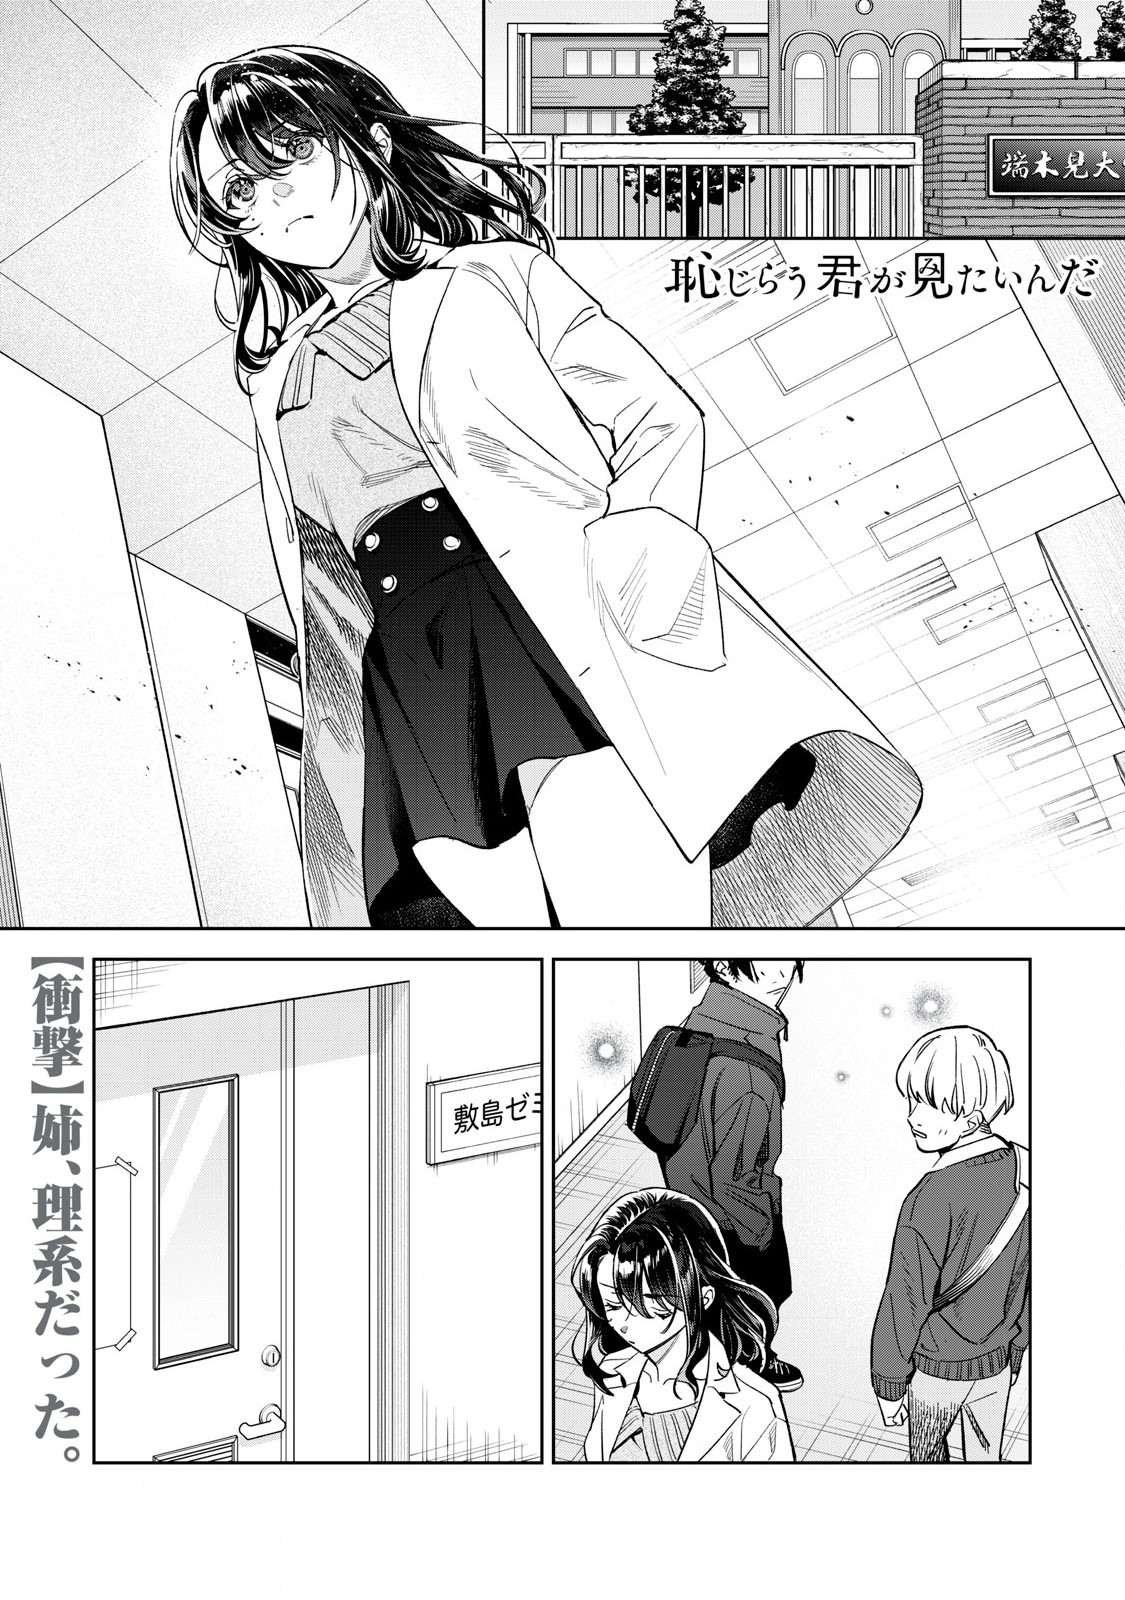 Hajirau Kimi ga Mitainda - Chapter 63.1 - Page 1